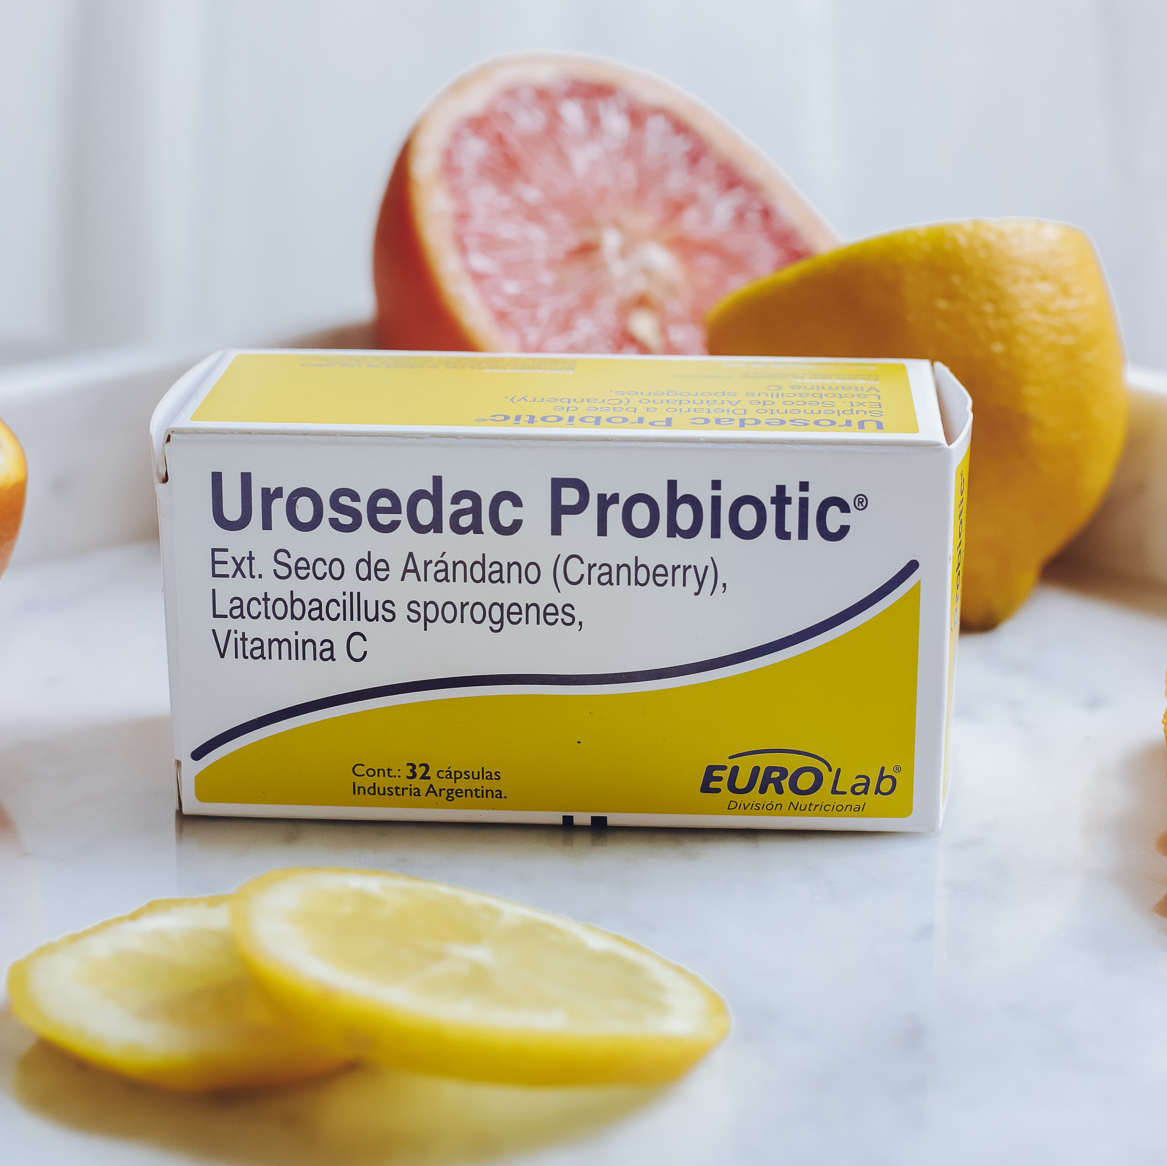 Urosedac Probiotic